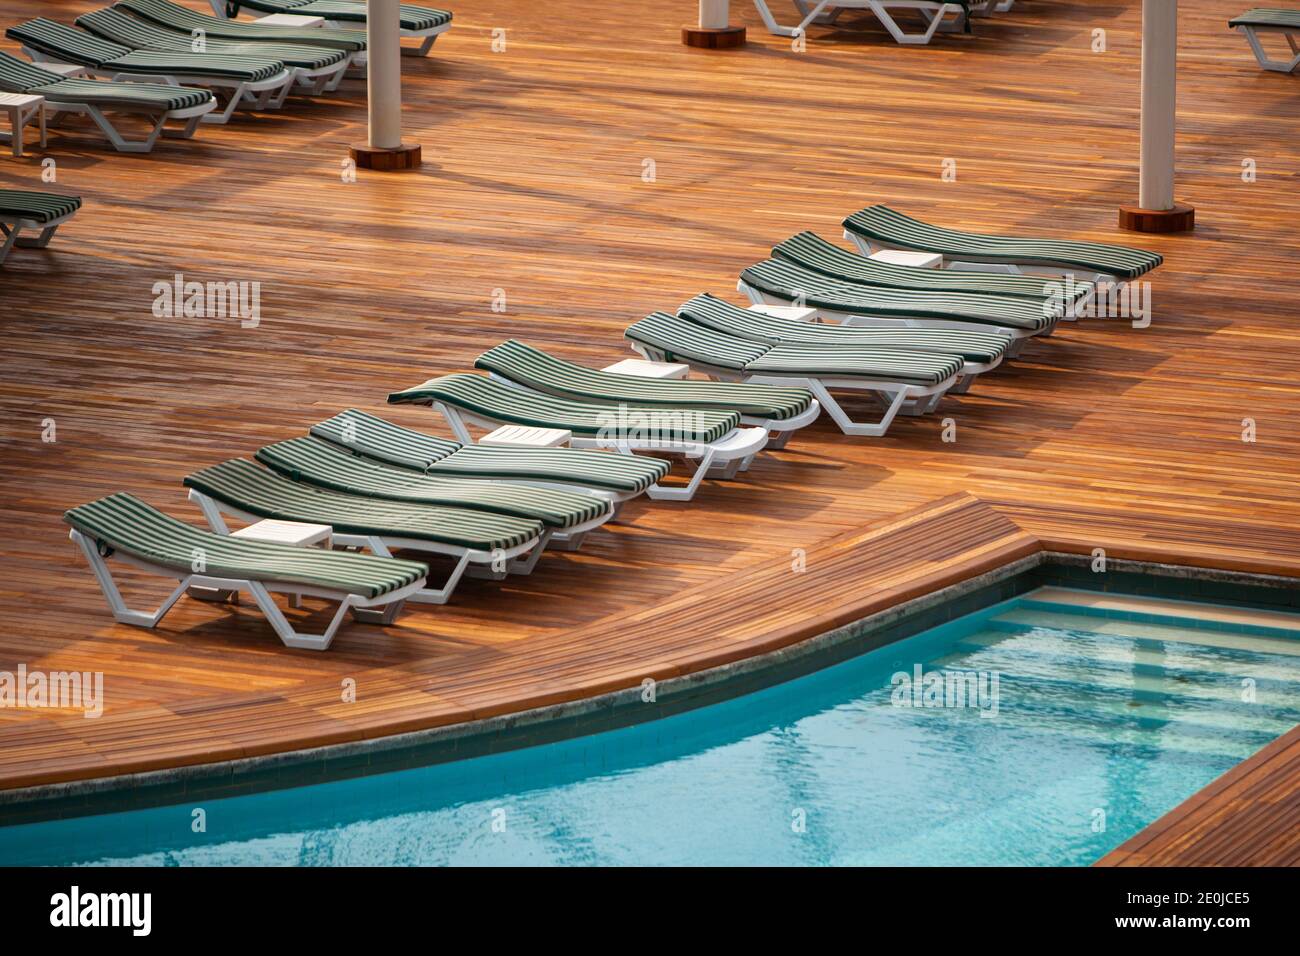 Vue de dessus de la piscine vide avec chaises longues dans l'hôtel. Crise Covid-19 dans l'industrie du voyage. Manque de demande pour les vacances d'été pendant à coronavi Banque D'Images